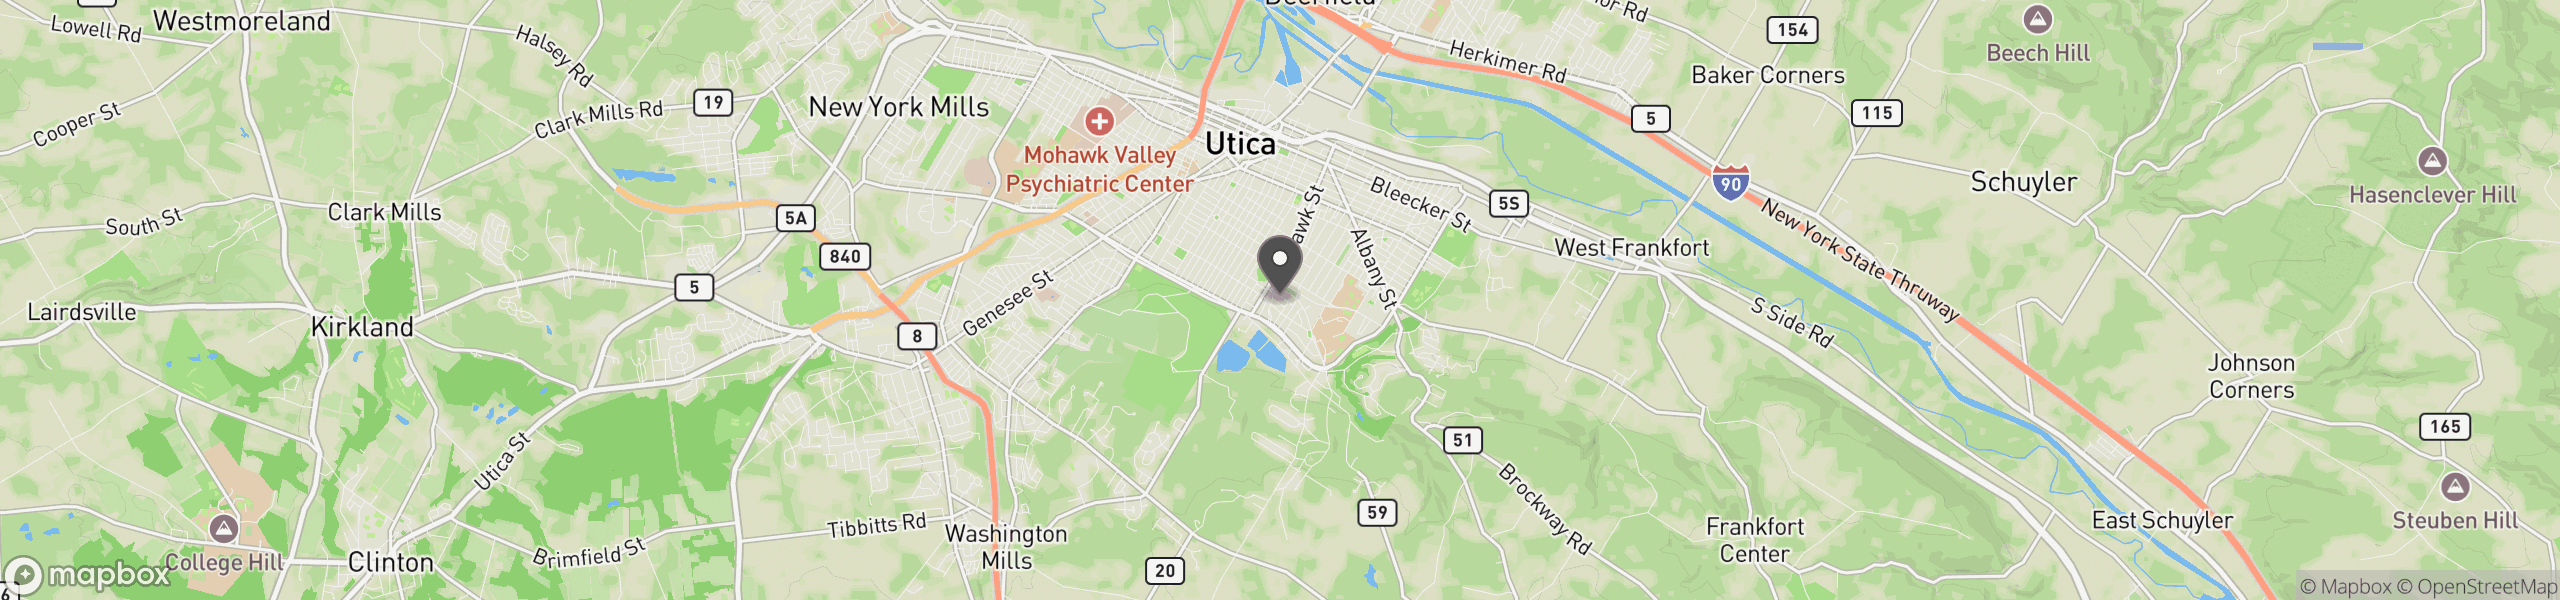 Utica, NY 13501